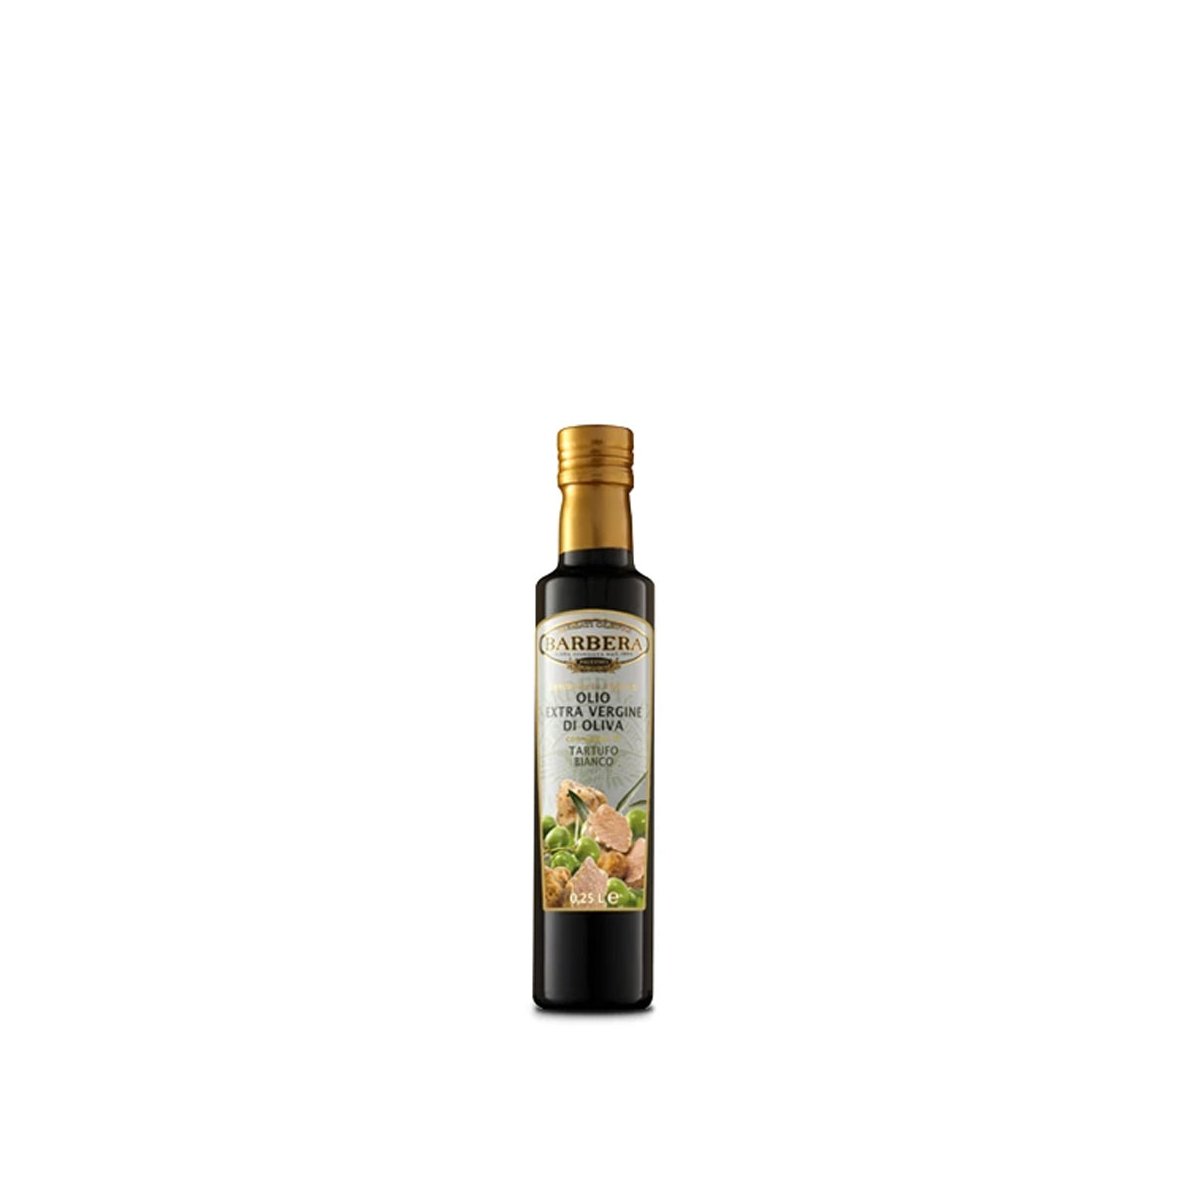 Olio Extravergine di Oliva aromatizzato al tartufo bianco, 0,25 L